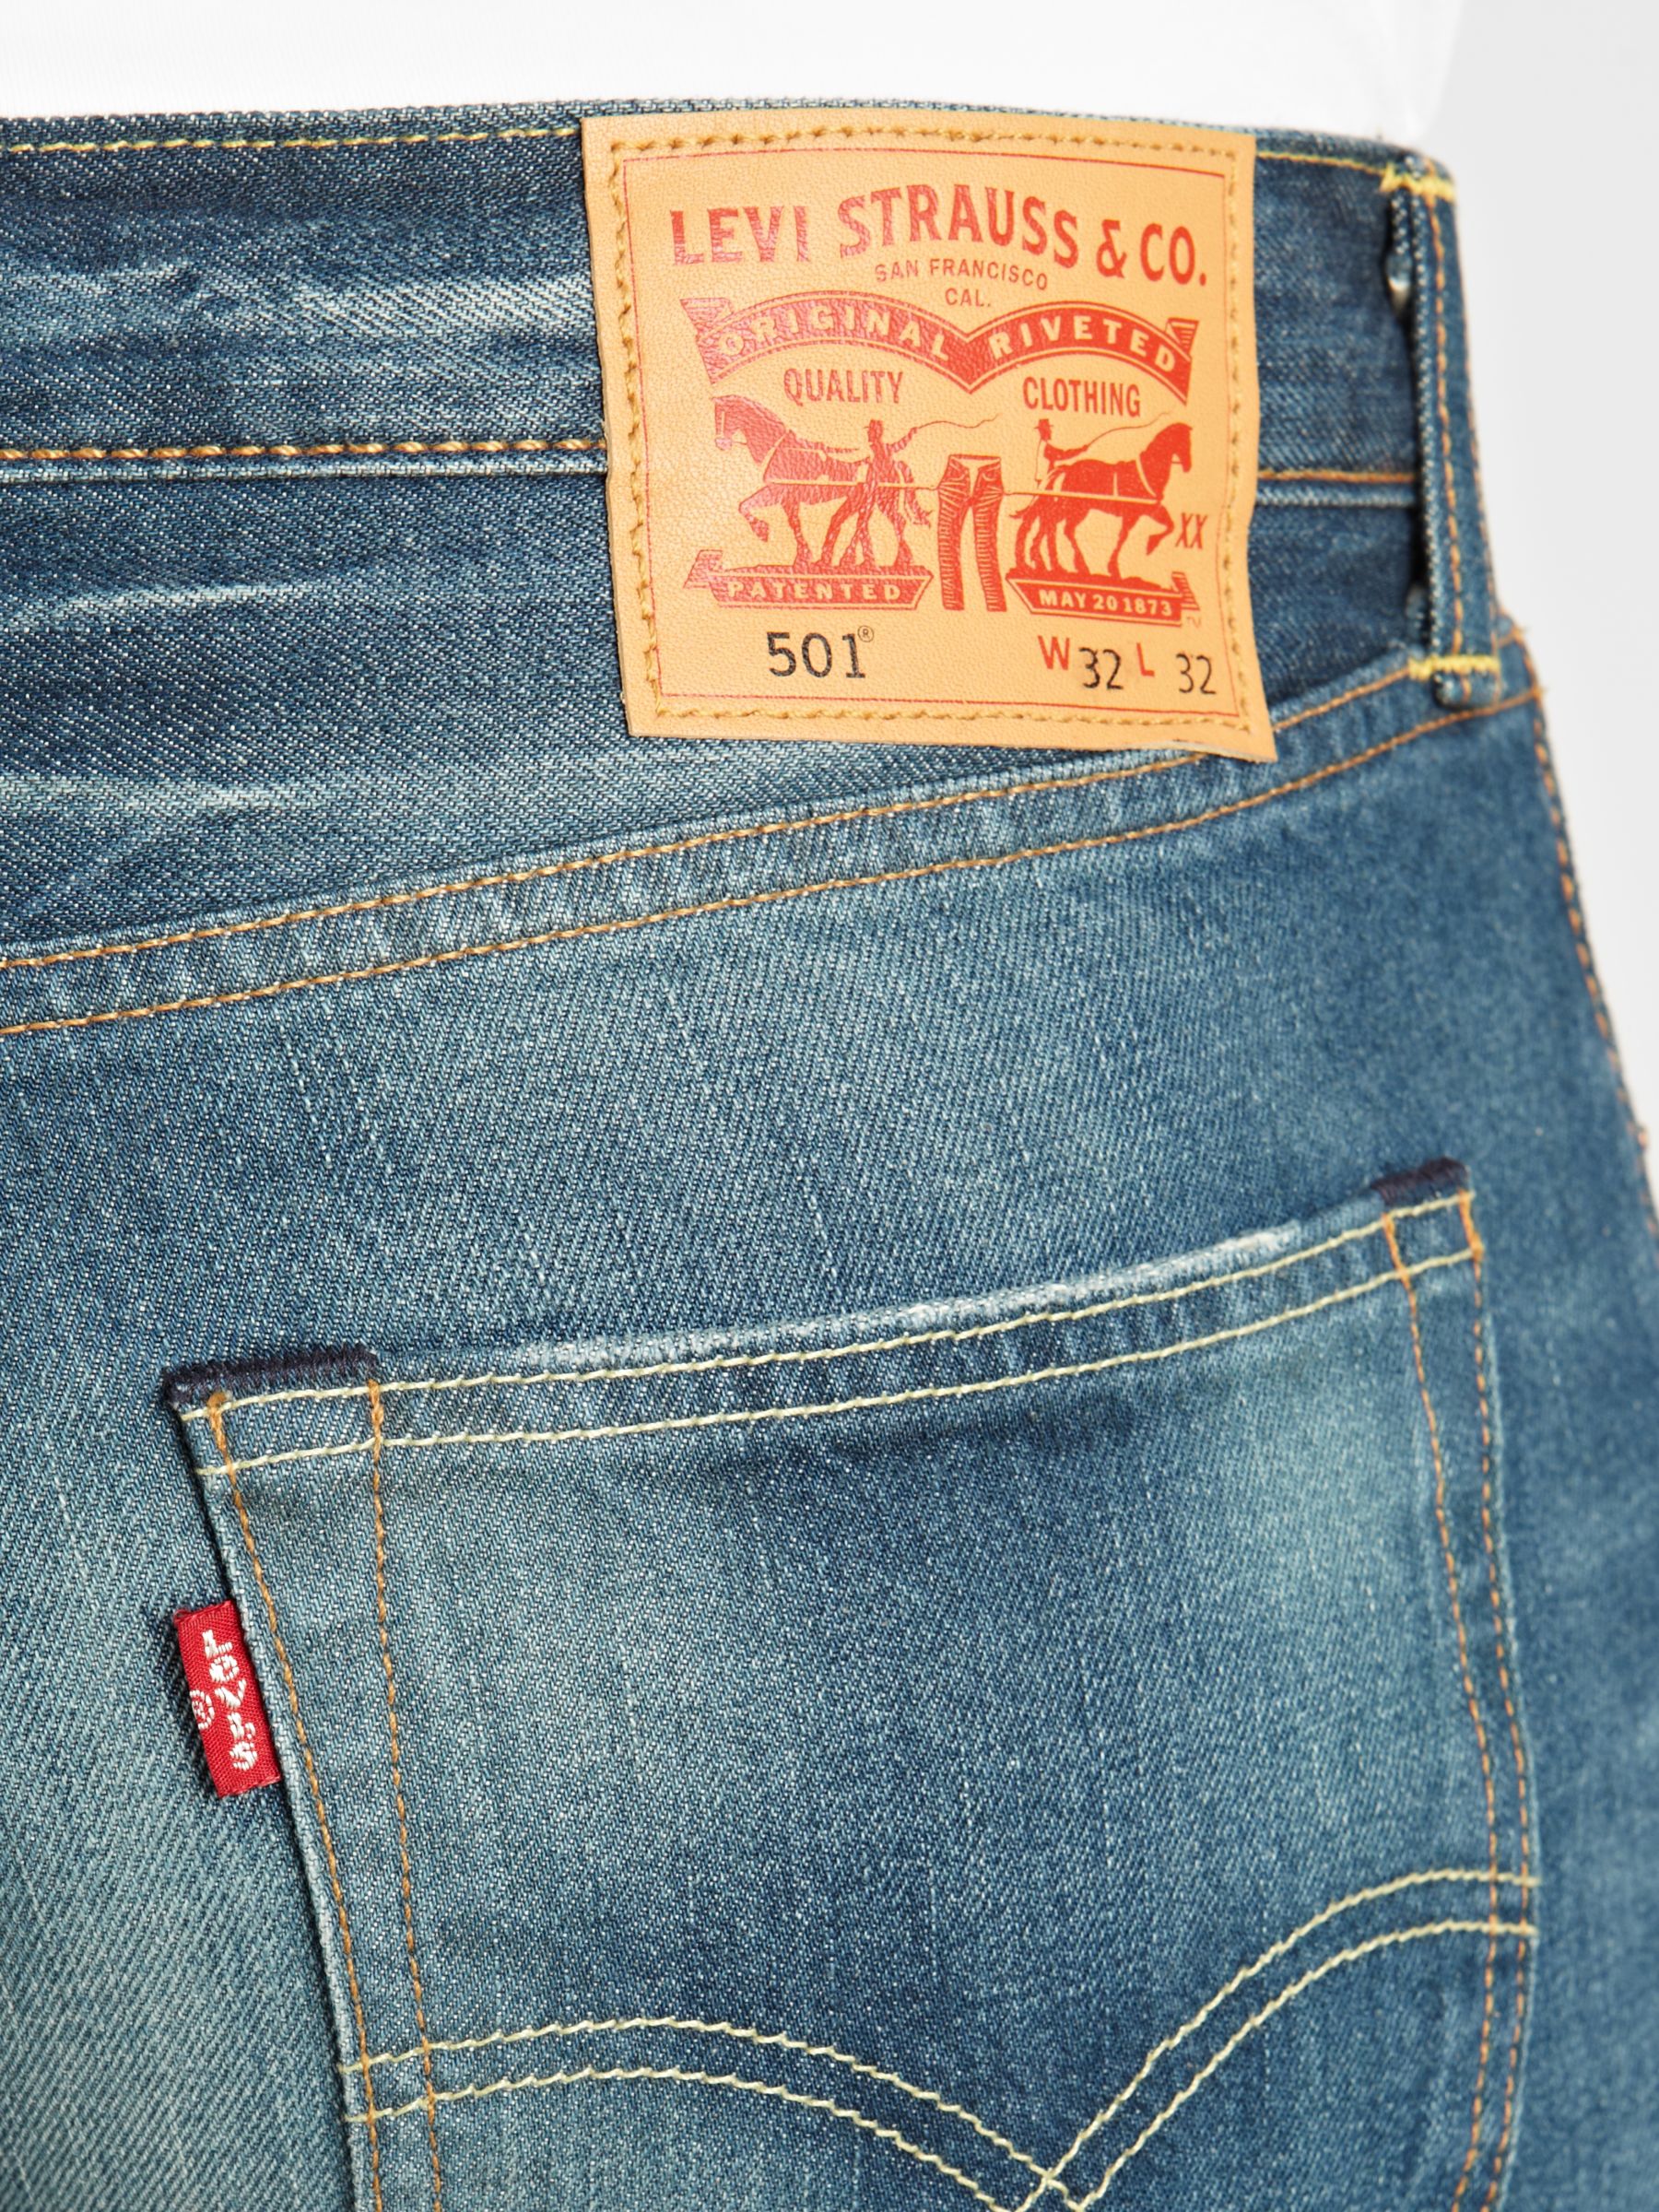 buy levi 501 jeans online